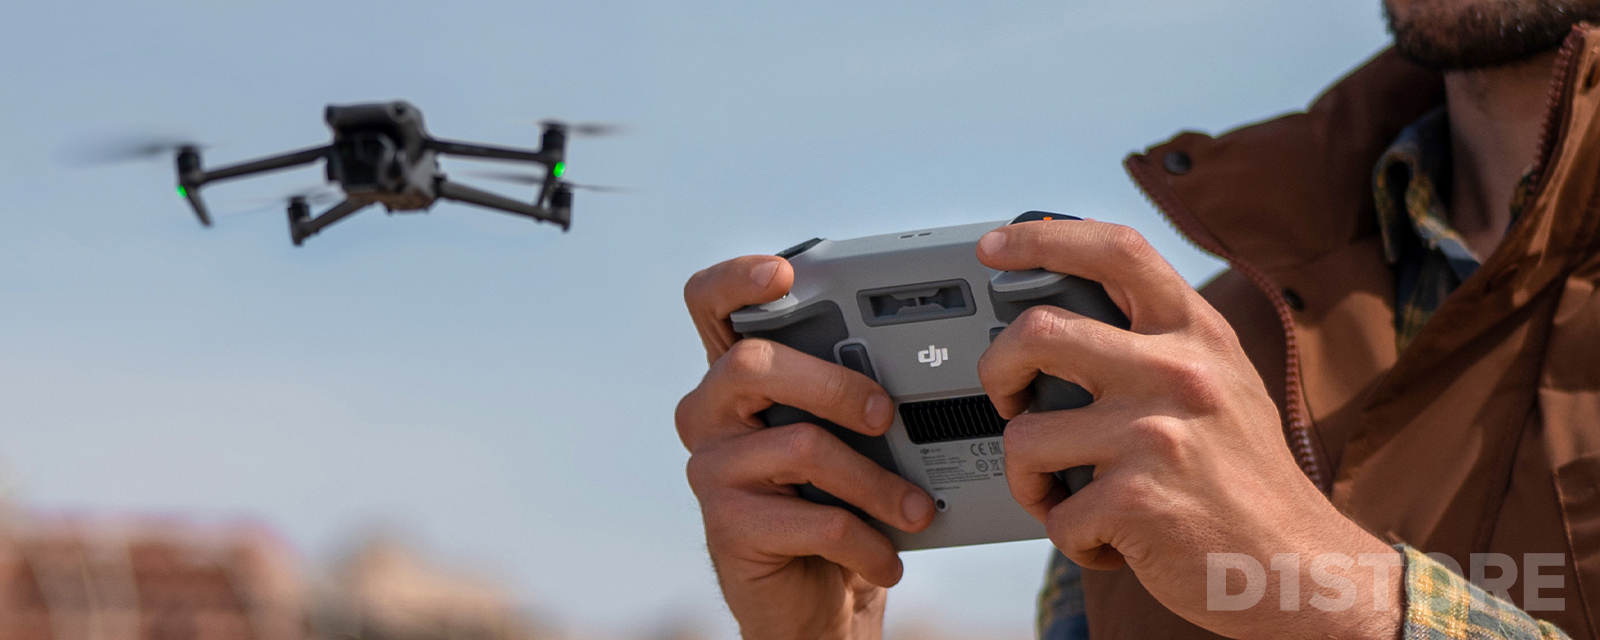 Quelle radio DJI est compatible avec quel drone ?